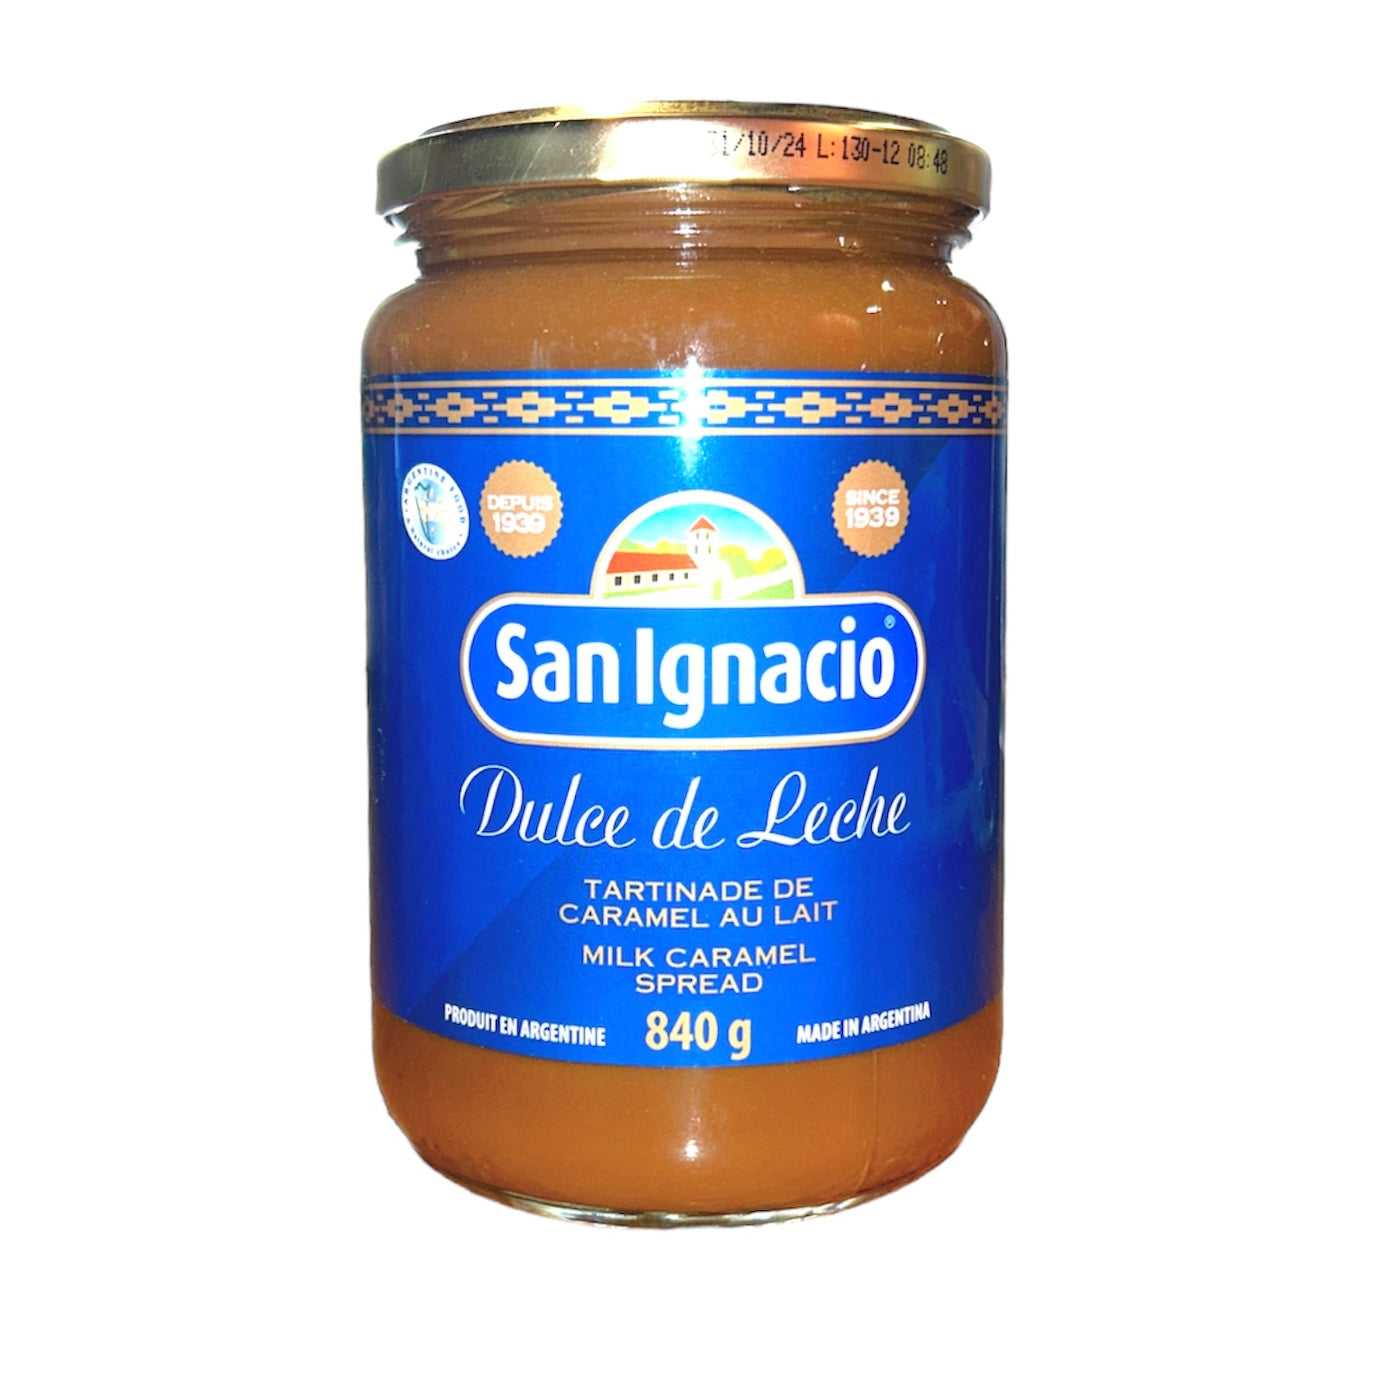 San Ignacio Milk Caramel spread | Dulce De Leche